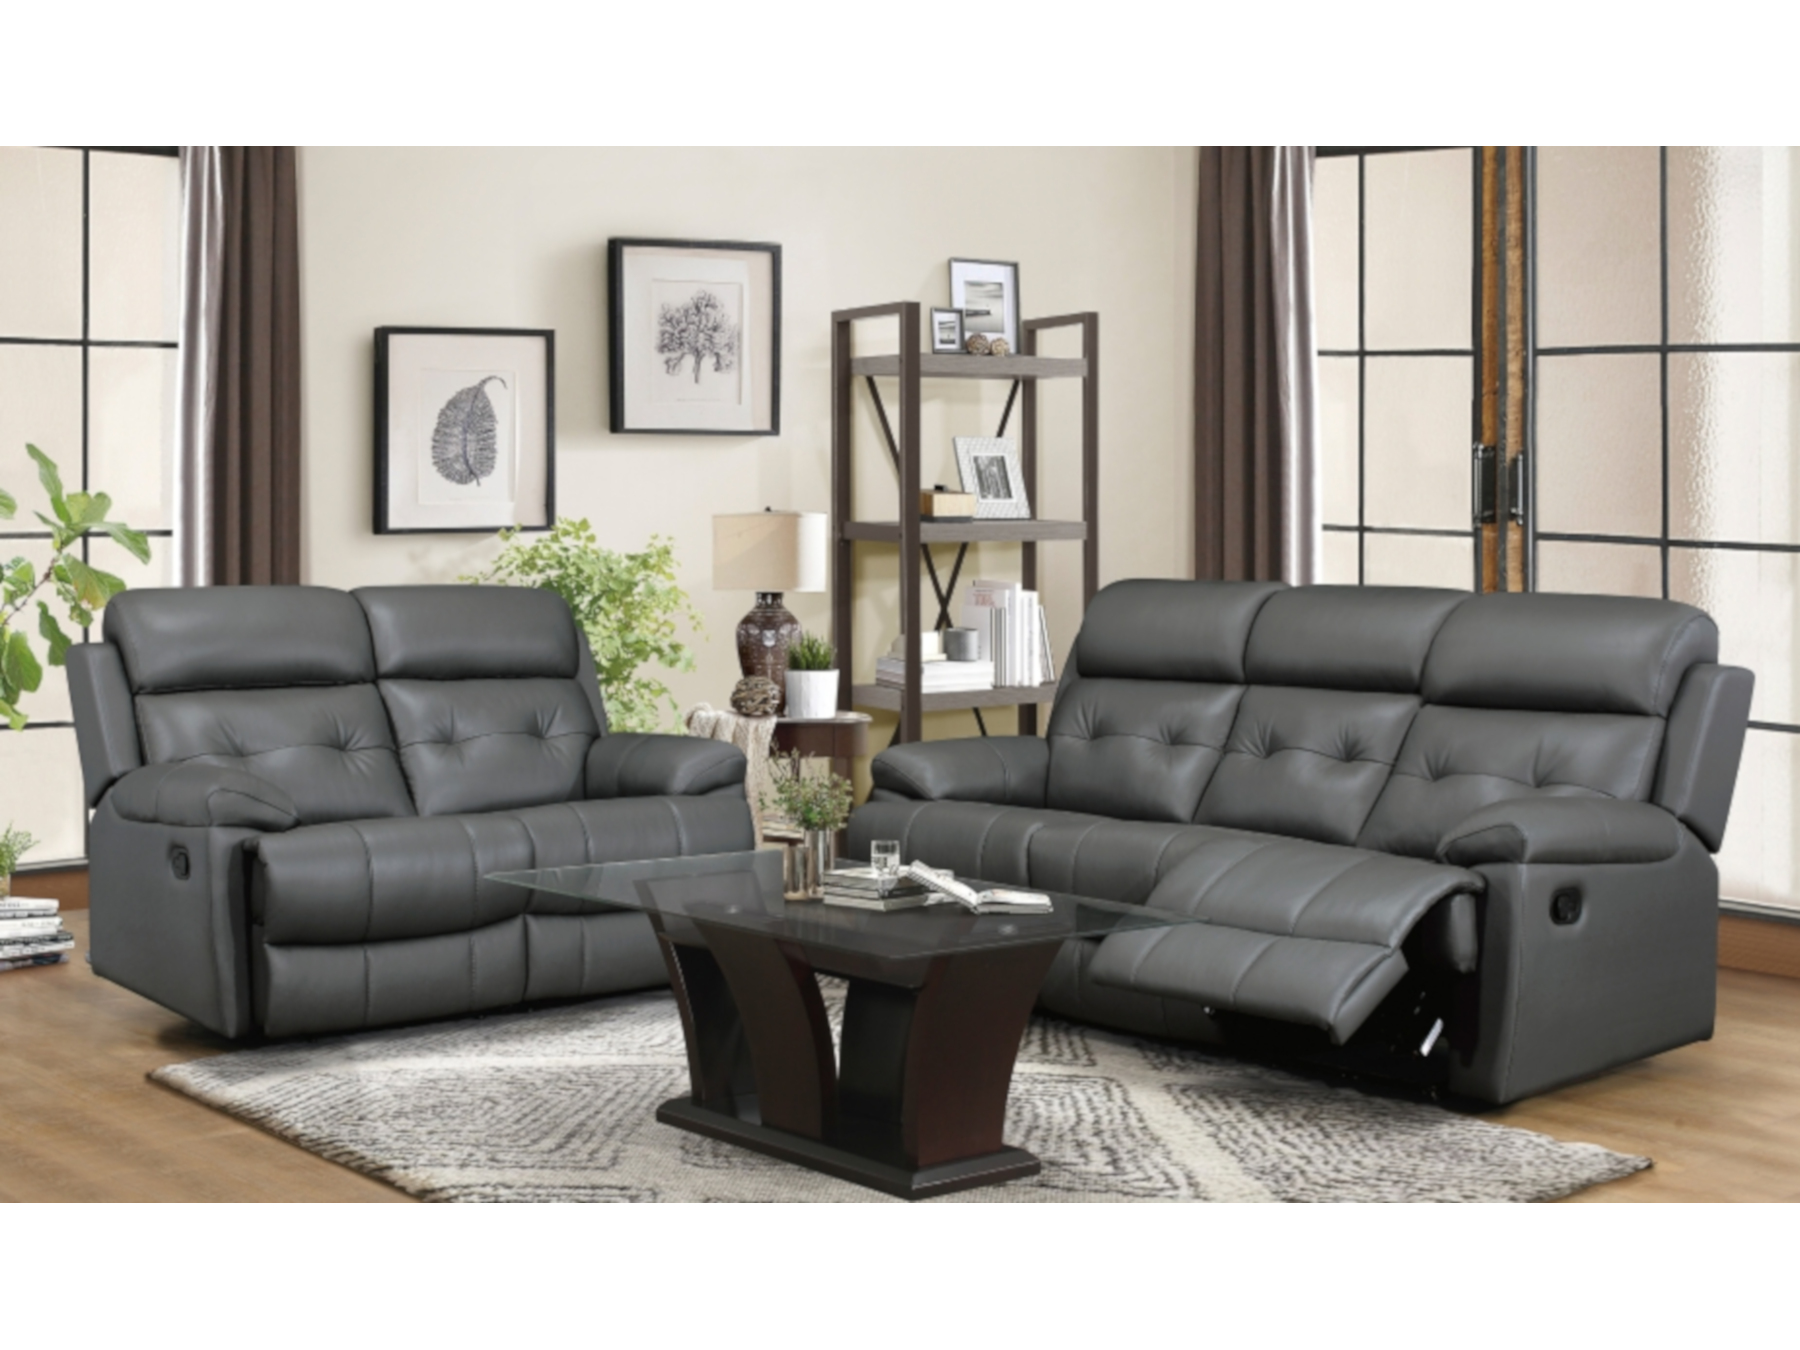 25101 - sofa - set - M-9529 - in - room